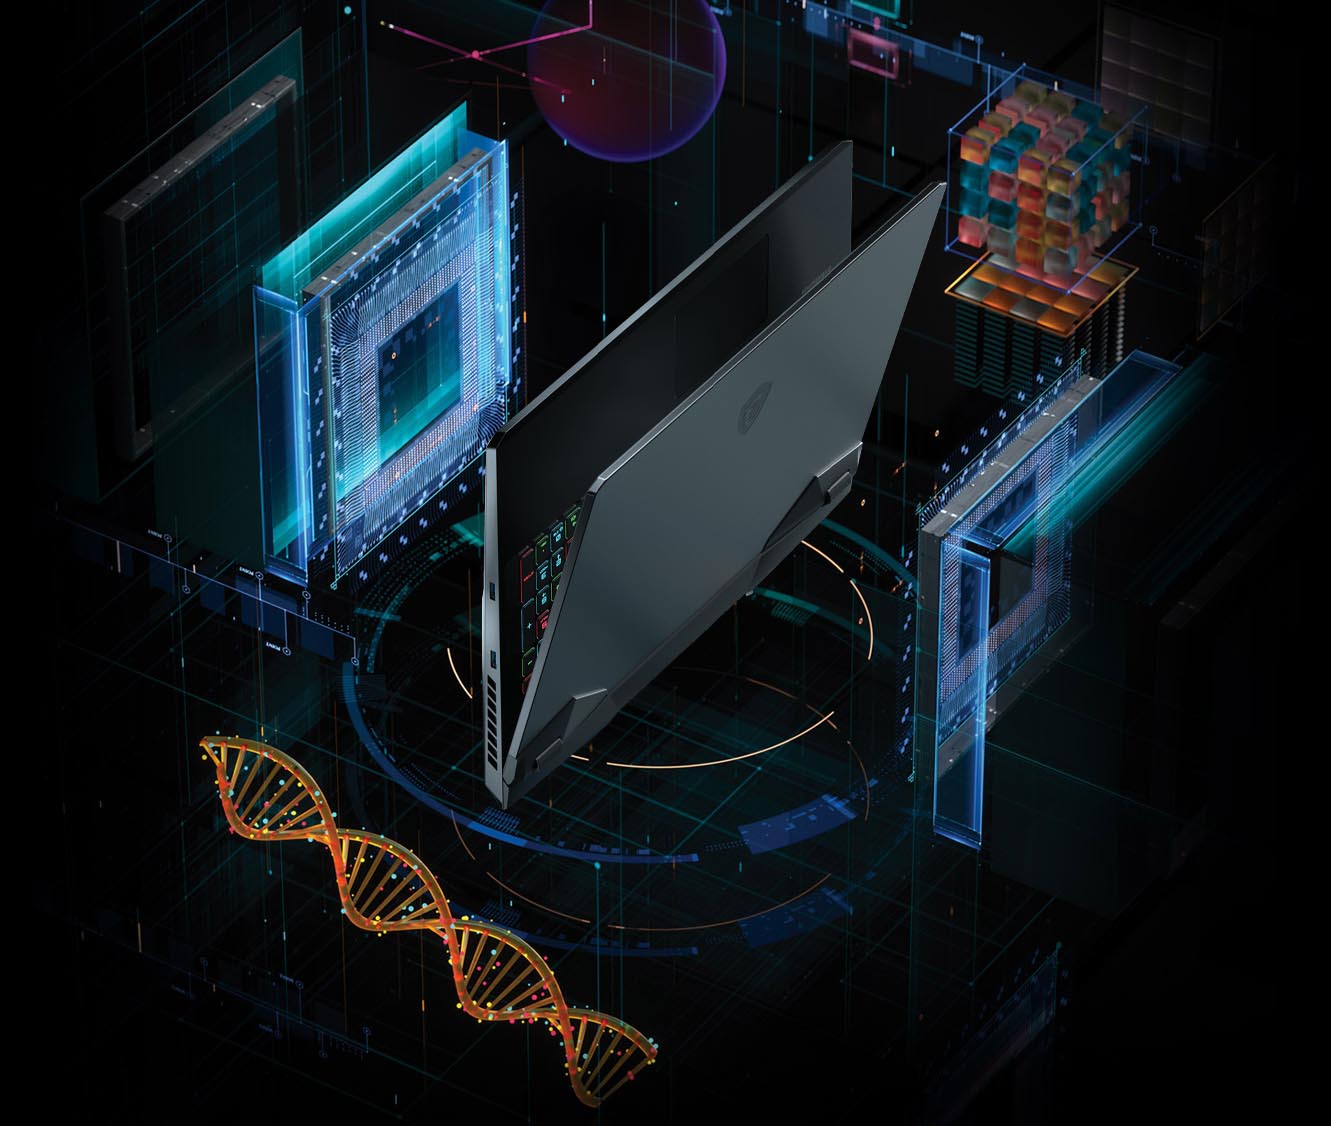 Sự kiện trực tuyến MSIology: “Vẻ đẹp công nghệ” của Laptop MSI sử dụng Intel® dòng H thế hệ 11